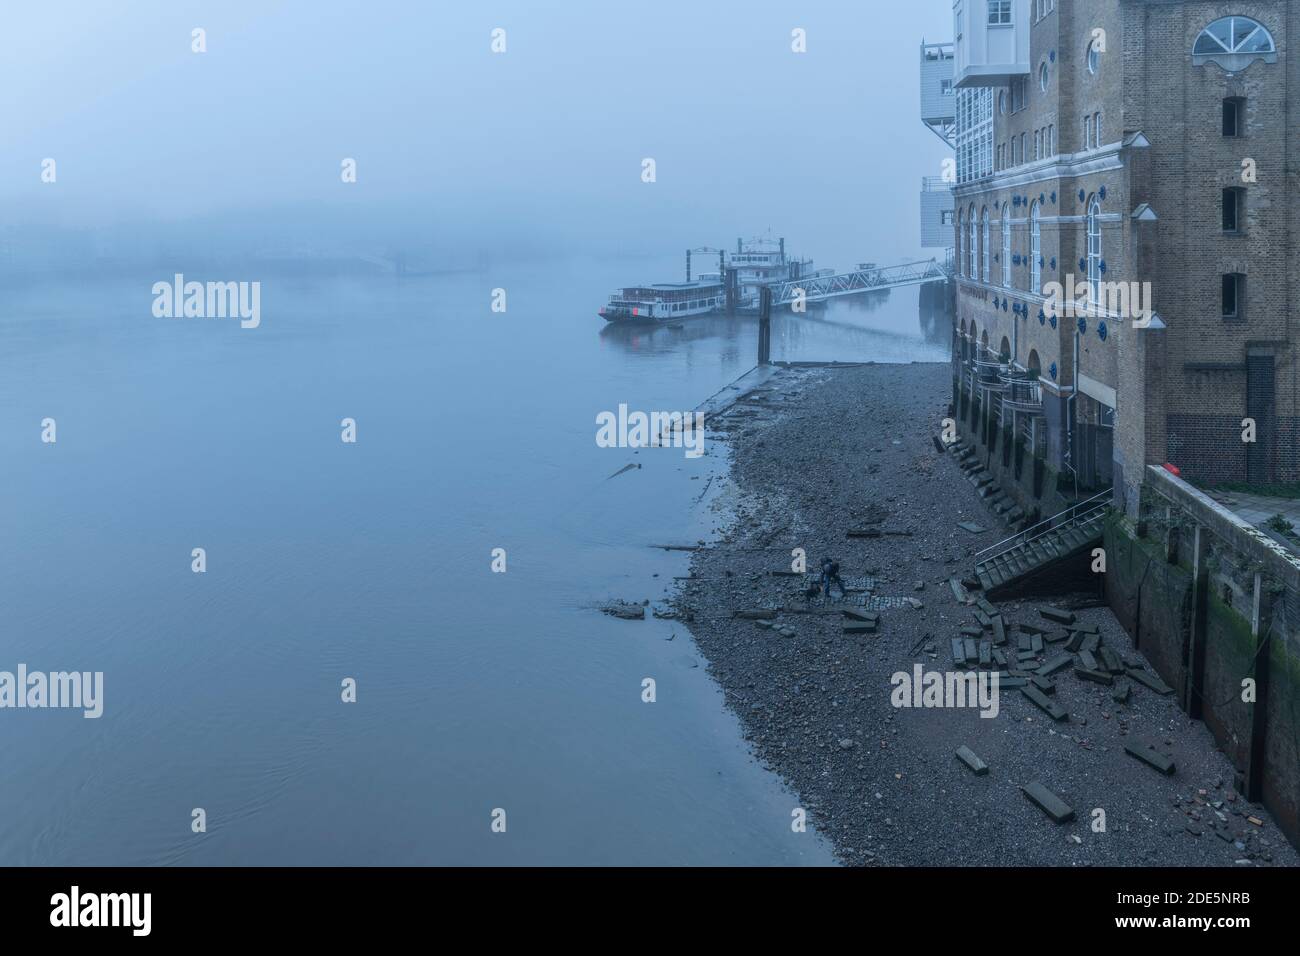 Butlers Wharf Pier à marée basse avec une plage de la Tamise dans un climat brumeux et brumeux et brumeux dans le centre-ville de Londres pendant le confinement du coronavirus Covid-19, Angleterre, Royaume-Uni Banque D'Images